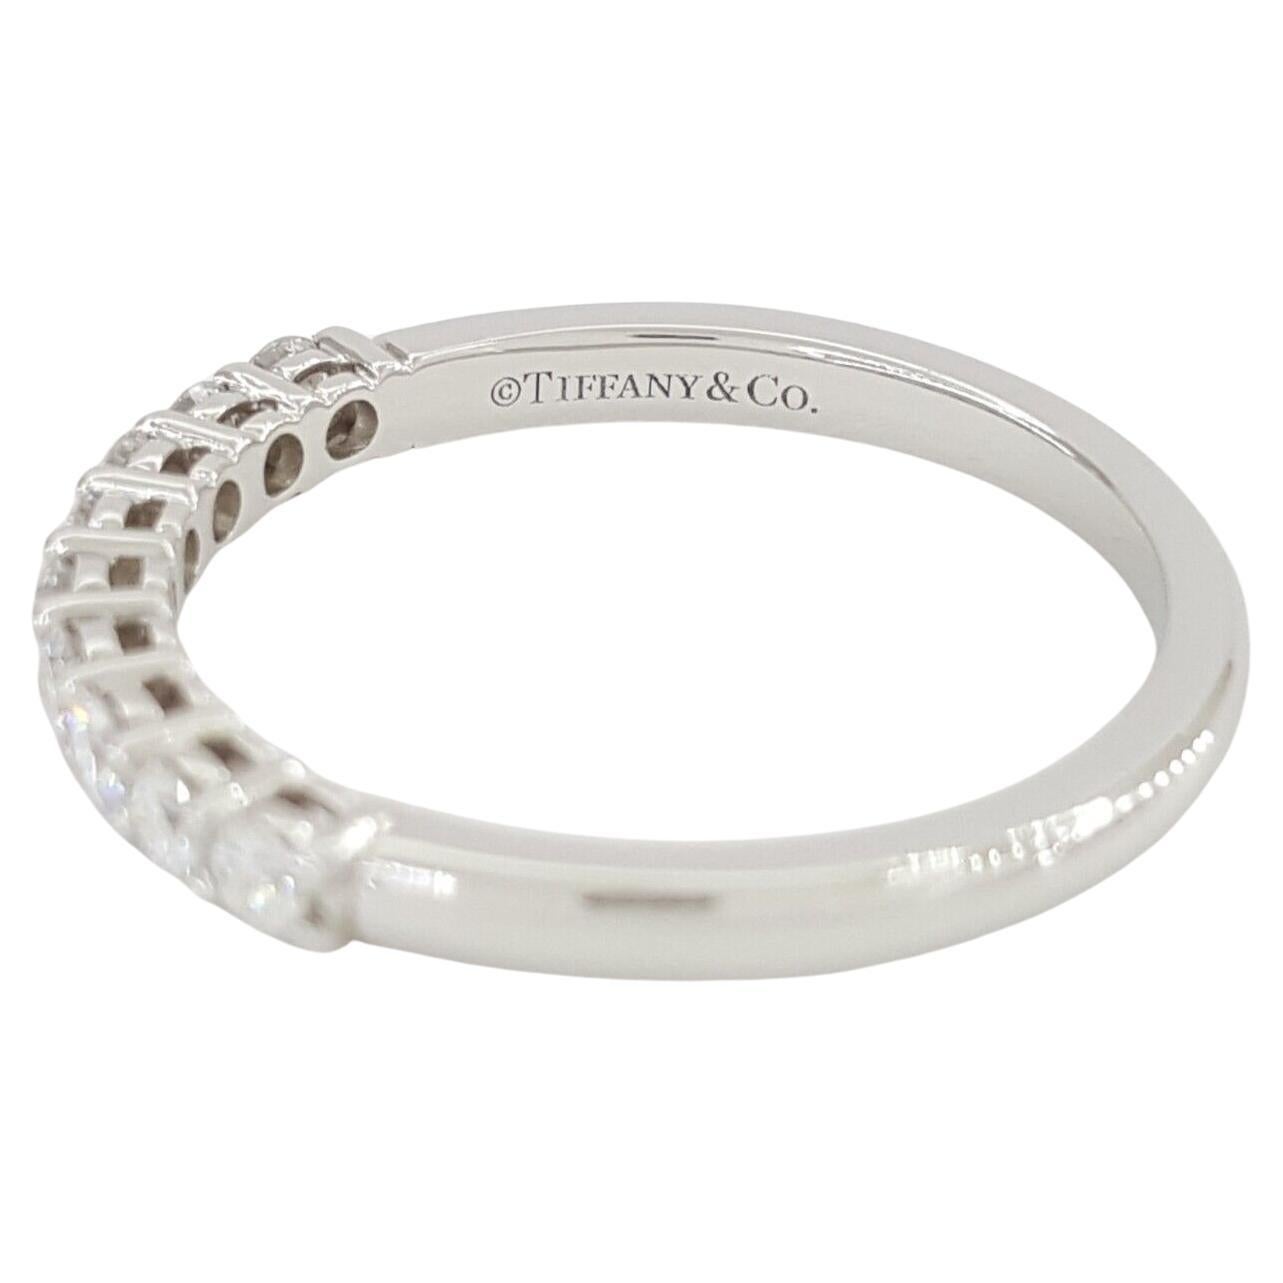 Anneau de mariage/anniversaire en platine Forever Half Circle de Tiffany & Co, orné d'un poids total de 0,27 ct de diamants ronds de taille brillant.

Fabriquée avec précision et authenticité, cette bague exquise pèse 2,6 grammes et a une taille de